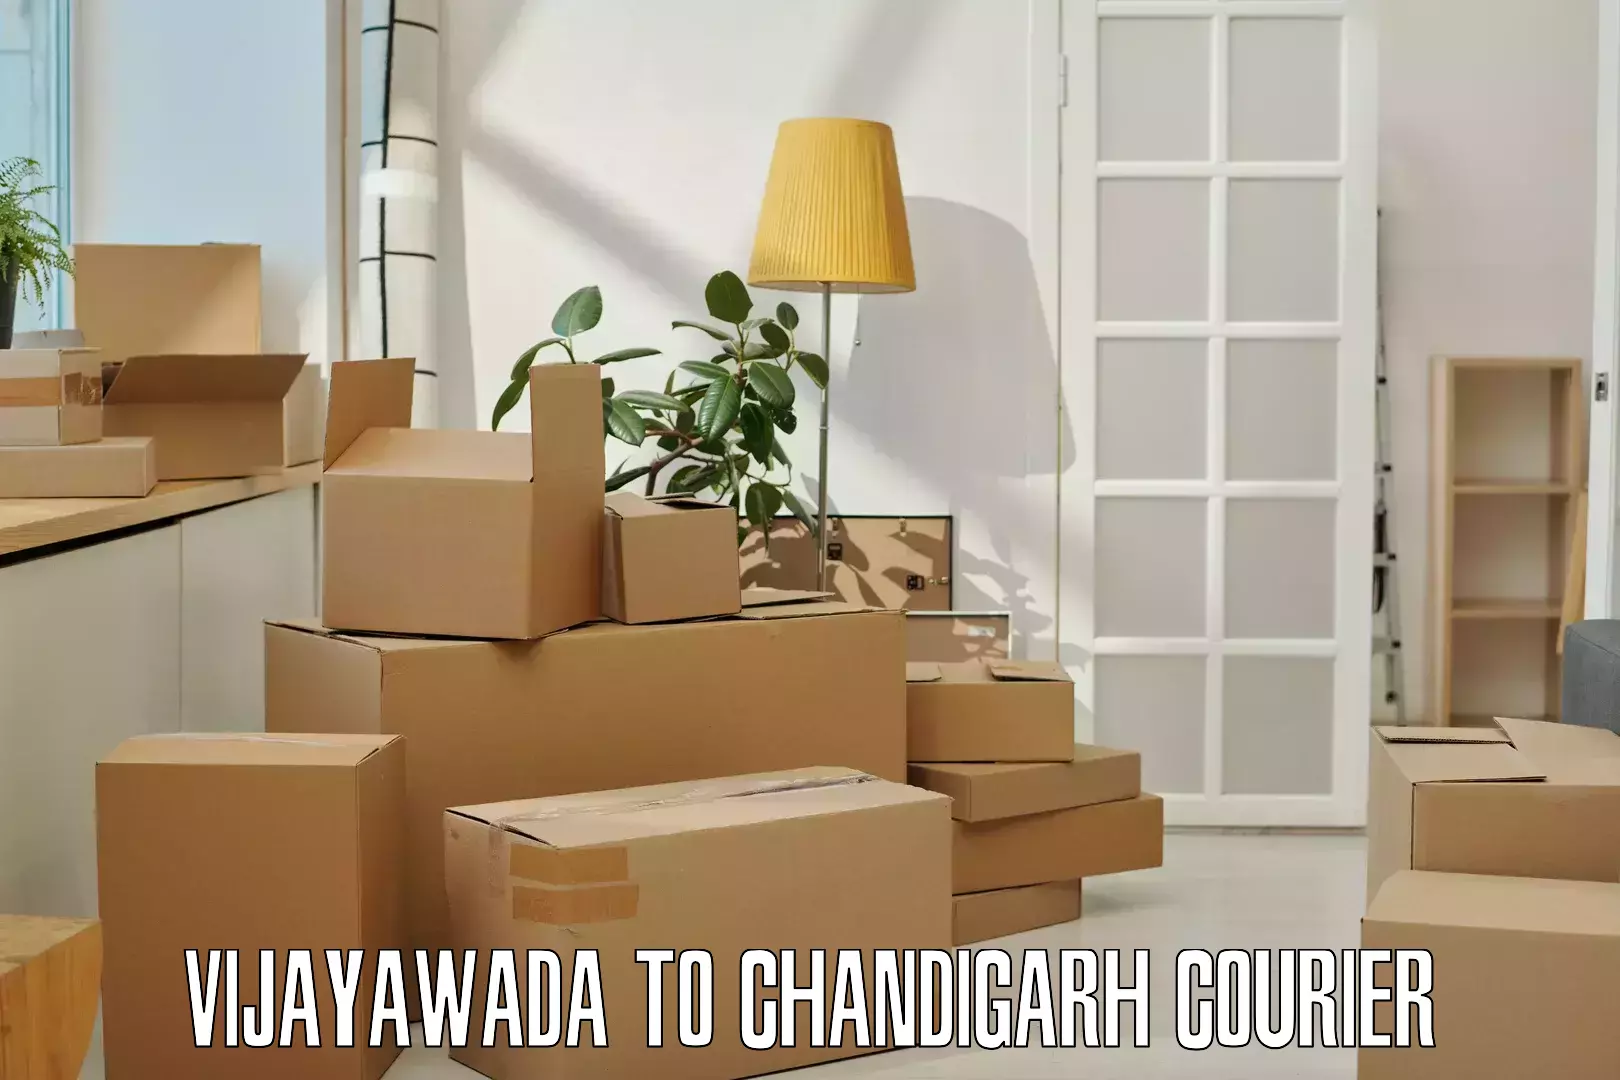 Premium courier services Vijayawada to Chandigarh